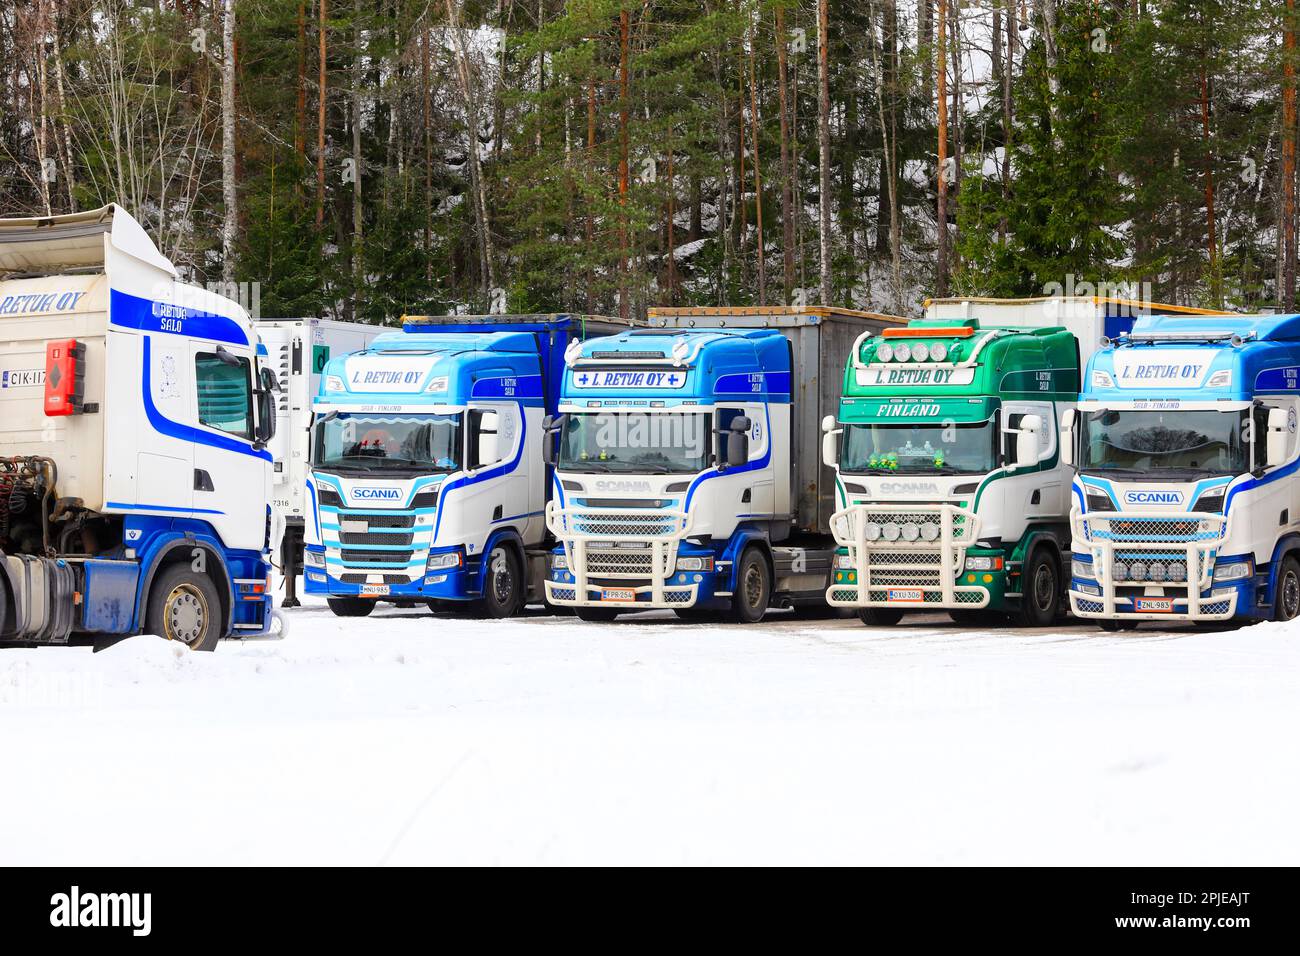 Wunderschön gestaltete Scania Trucks L. Retva Oy parkte im Depot an einem Sonntagmorgen im Winter. Salo, Finnland. 12. März 2023. Stockfoto